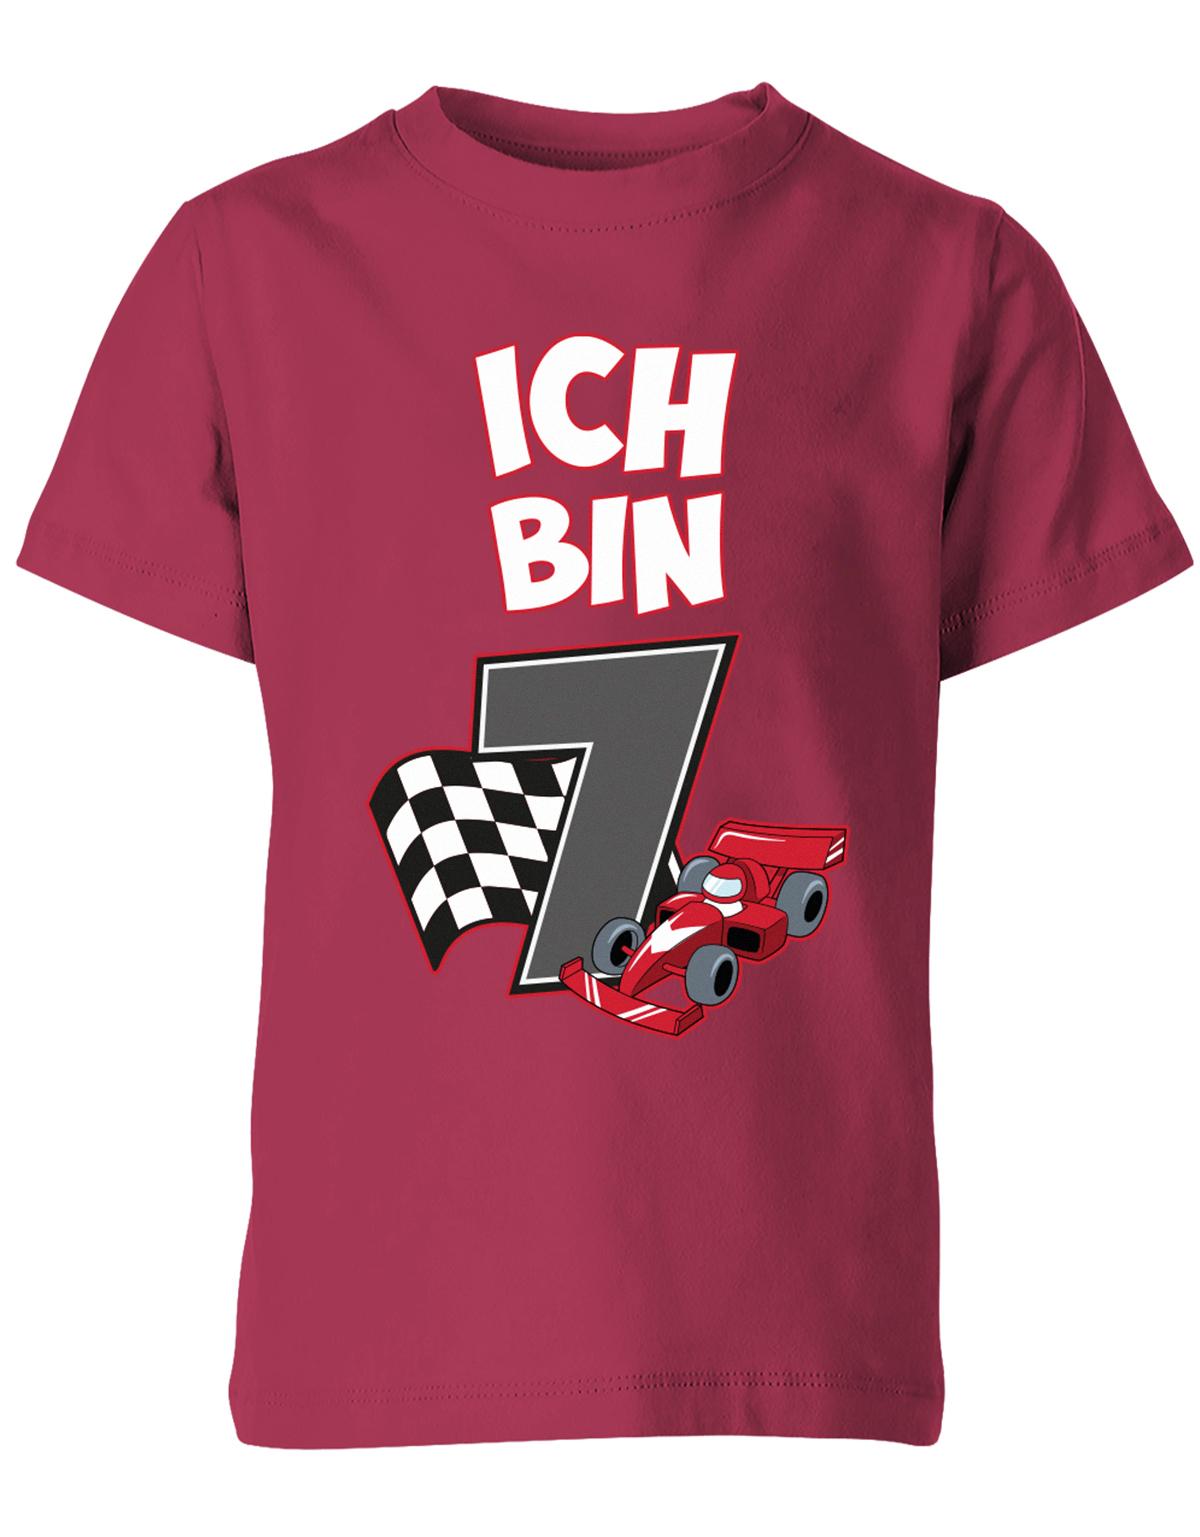 ich-bin-7-autorennen-rennwagen-geburtstag-rennfahrer-kinder-shirt-sorbet